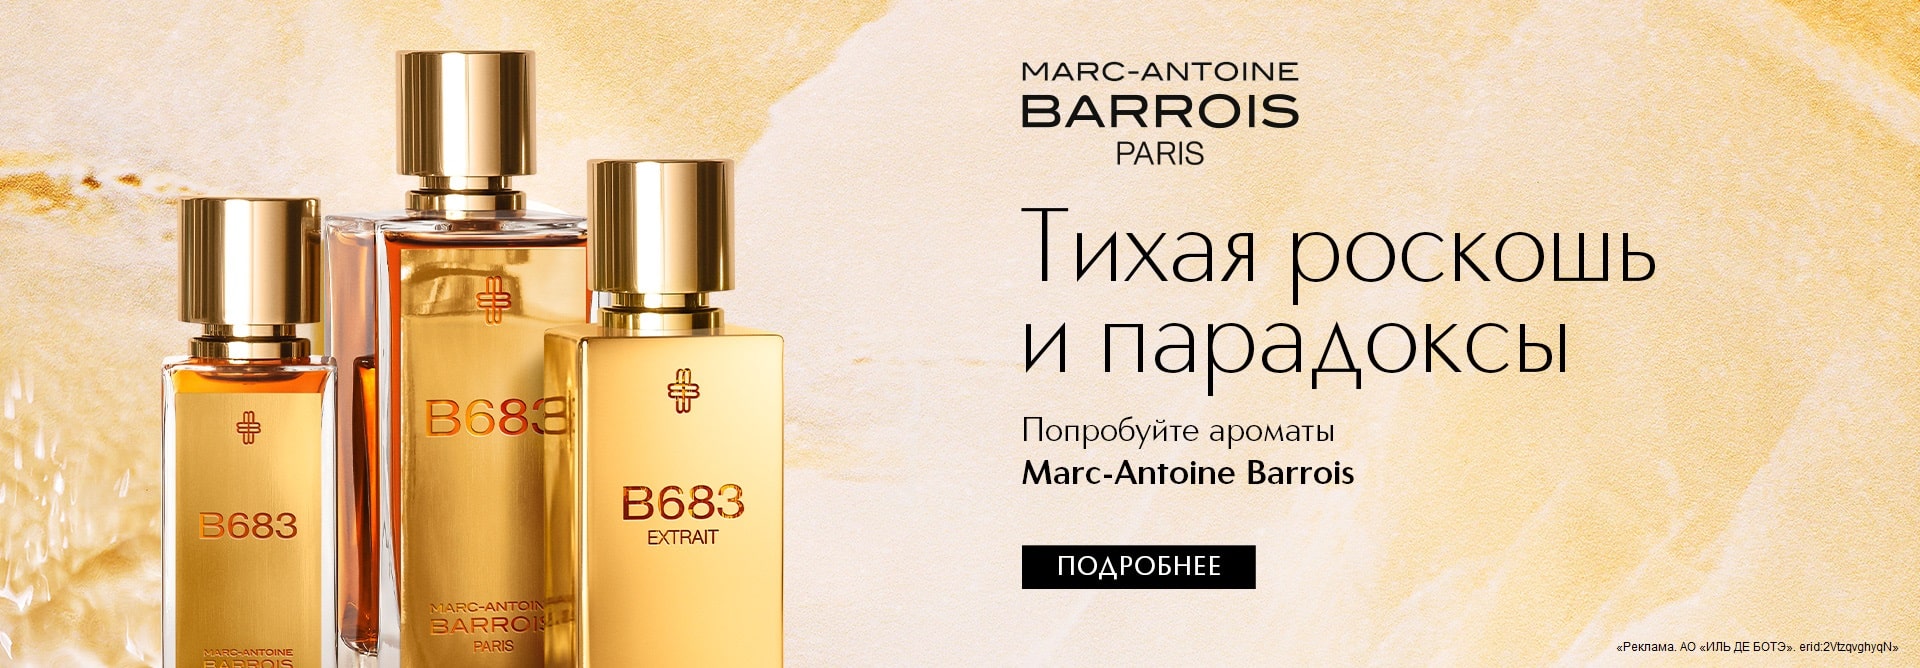 Встречайте новый бренд Marc-Antoine Barrois в ИЛЬ ДЕ БОТЭ!